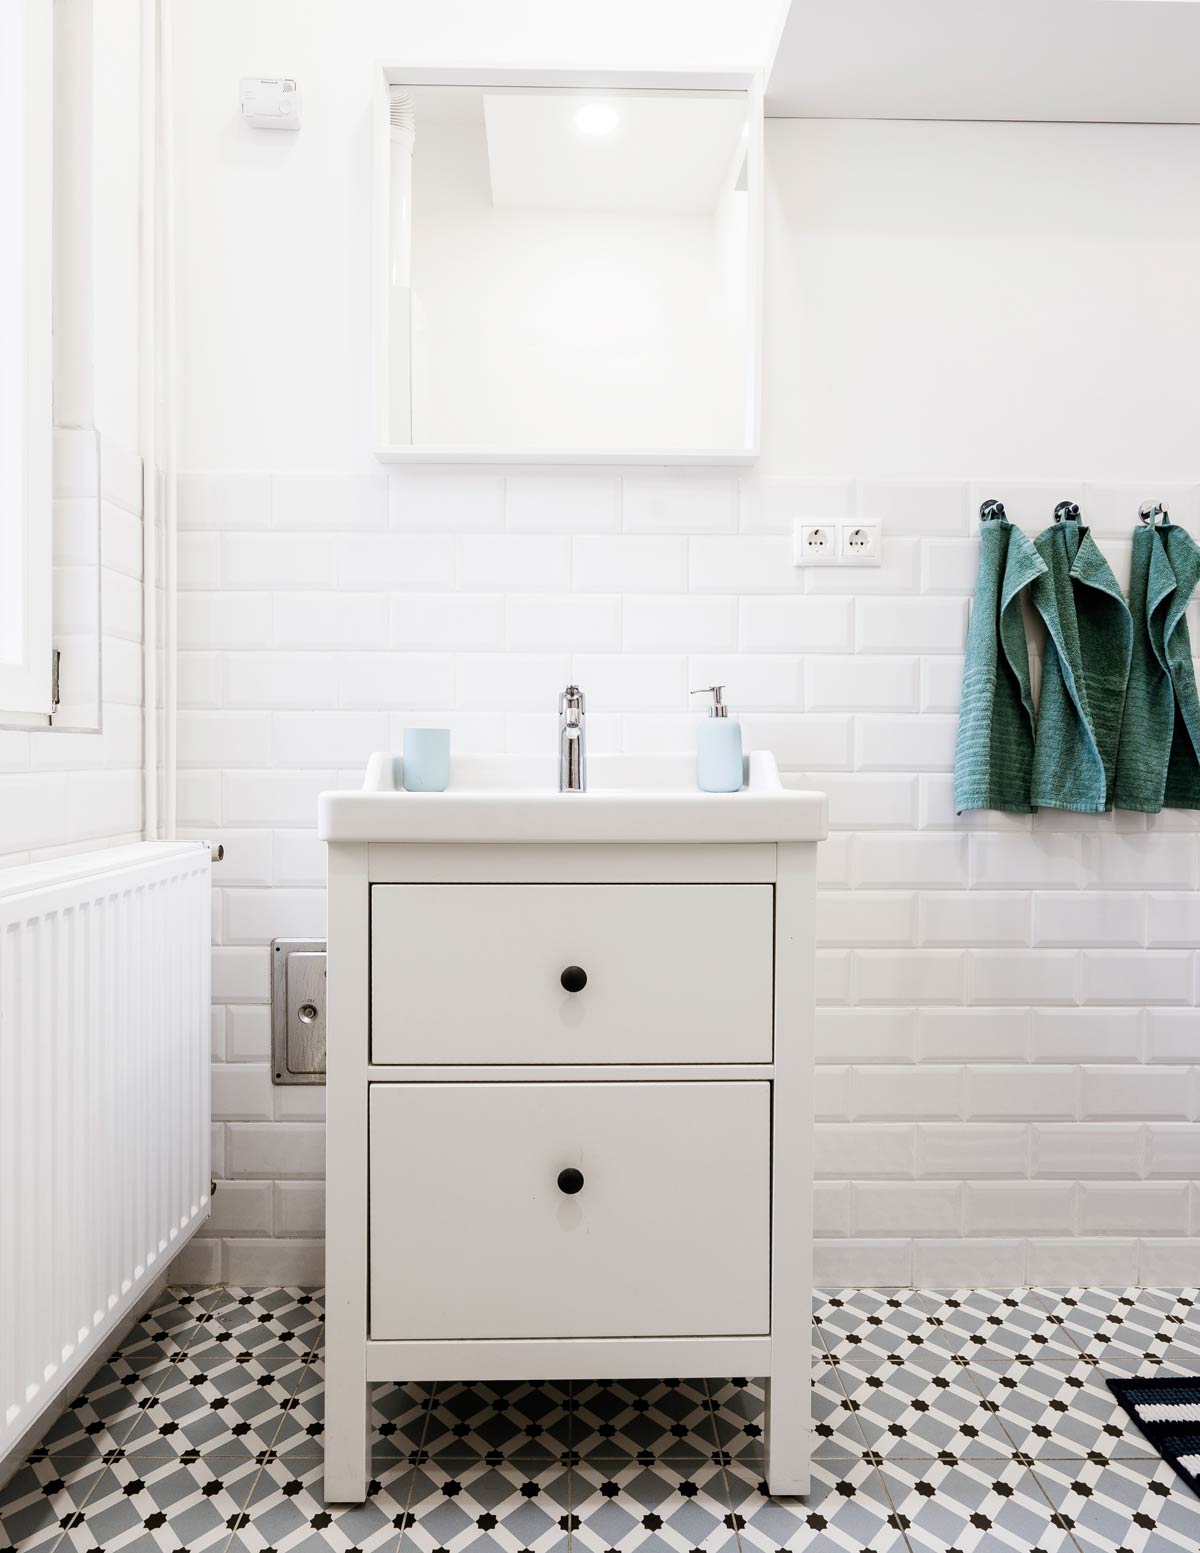 Biała łazienka z podłogą w geometryczny, biało-czarny wzór